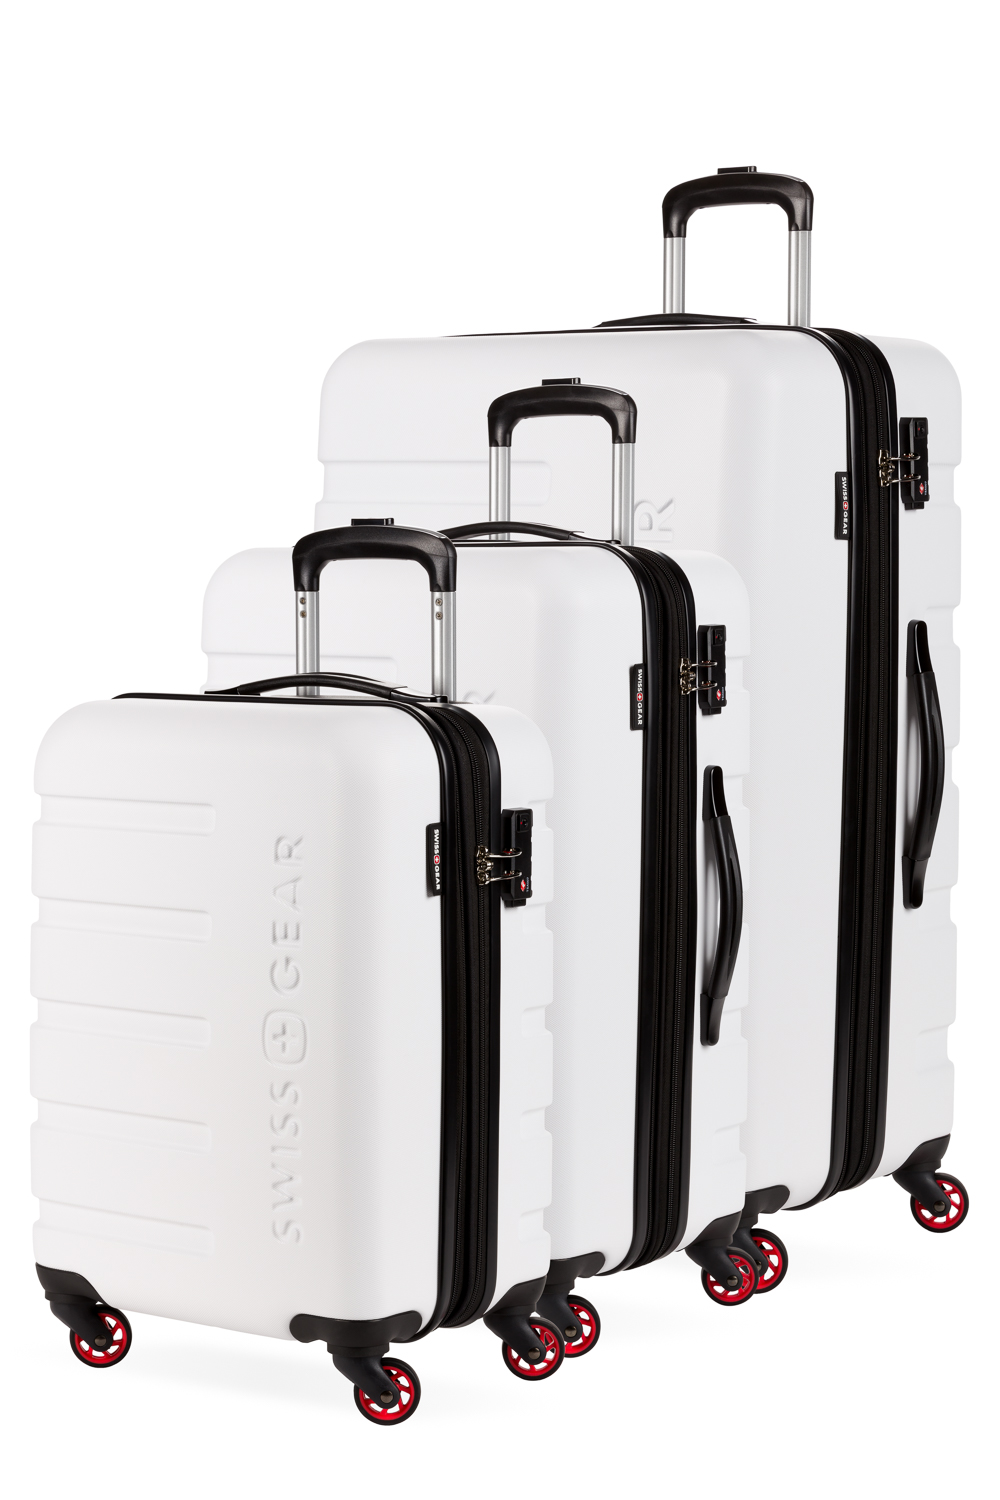 hardside luggage sets with usb port